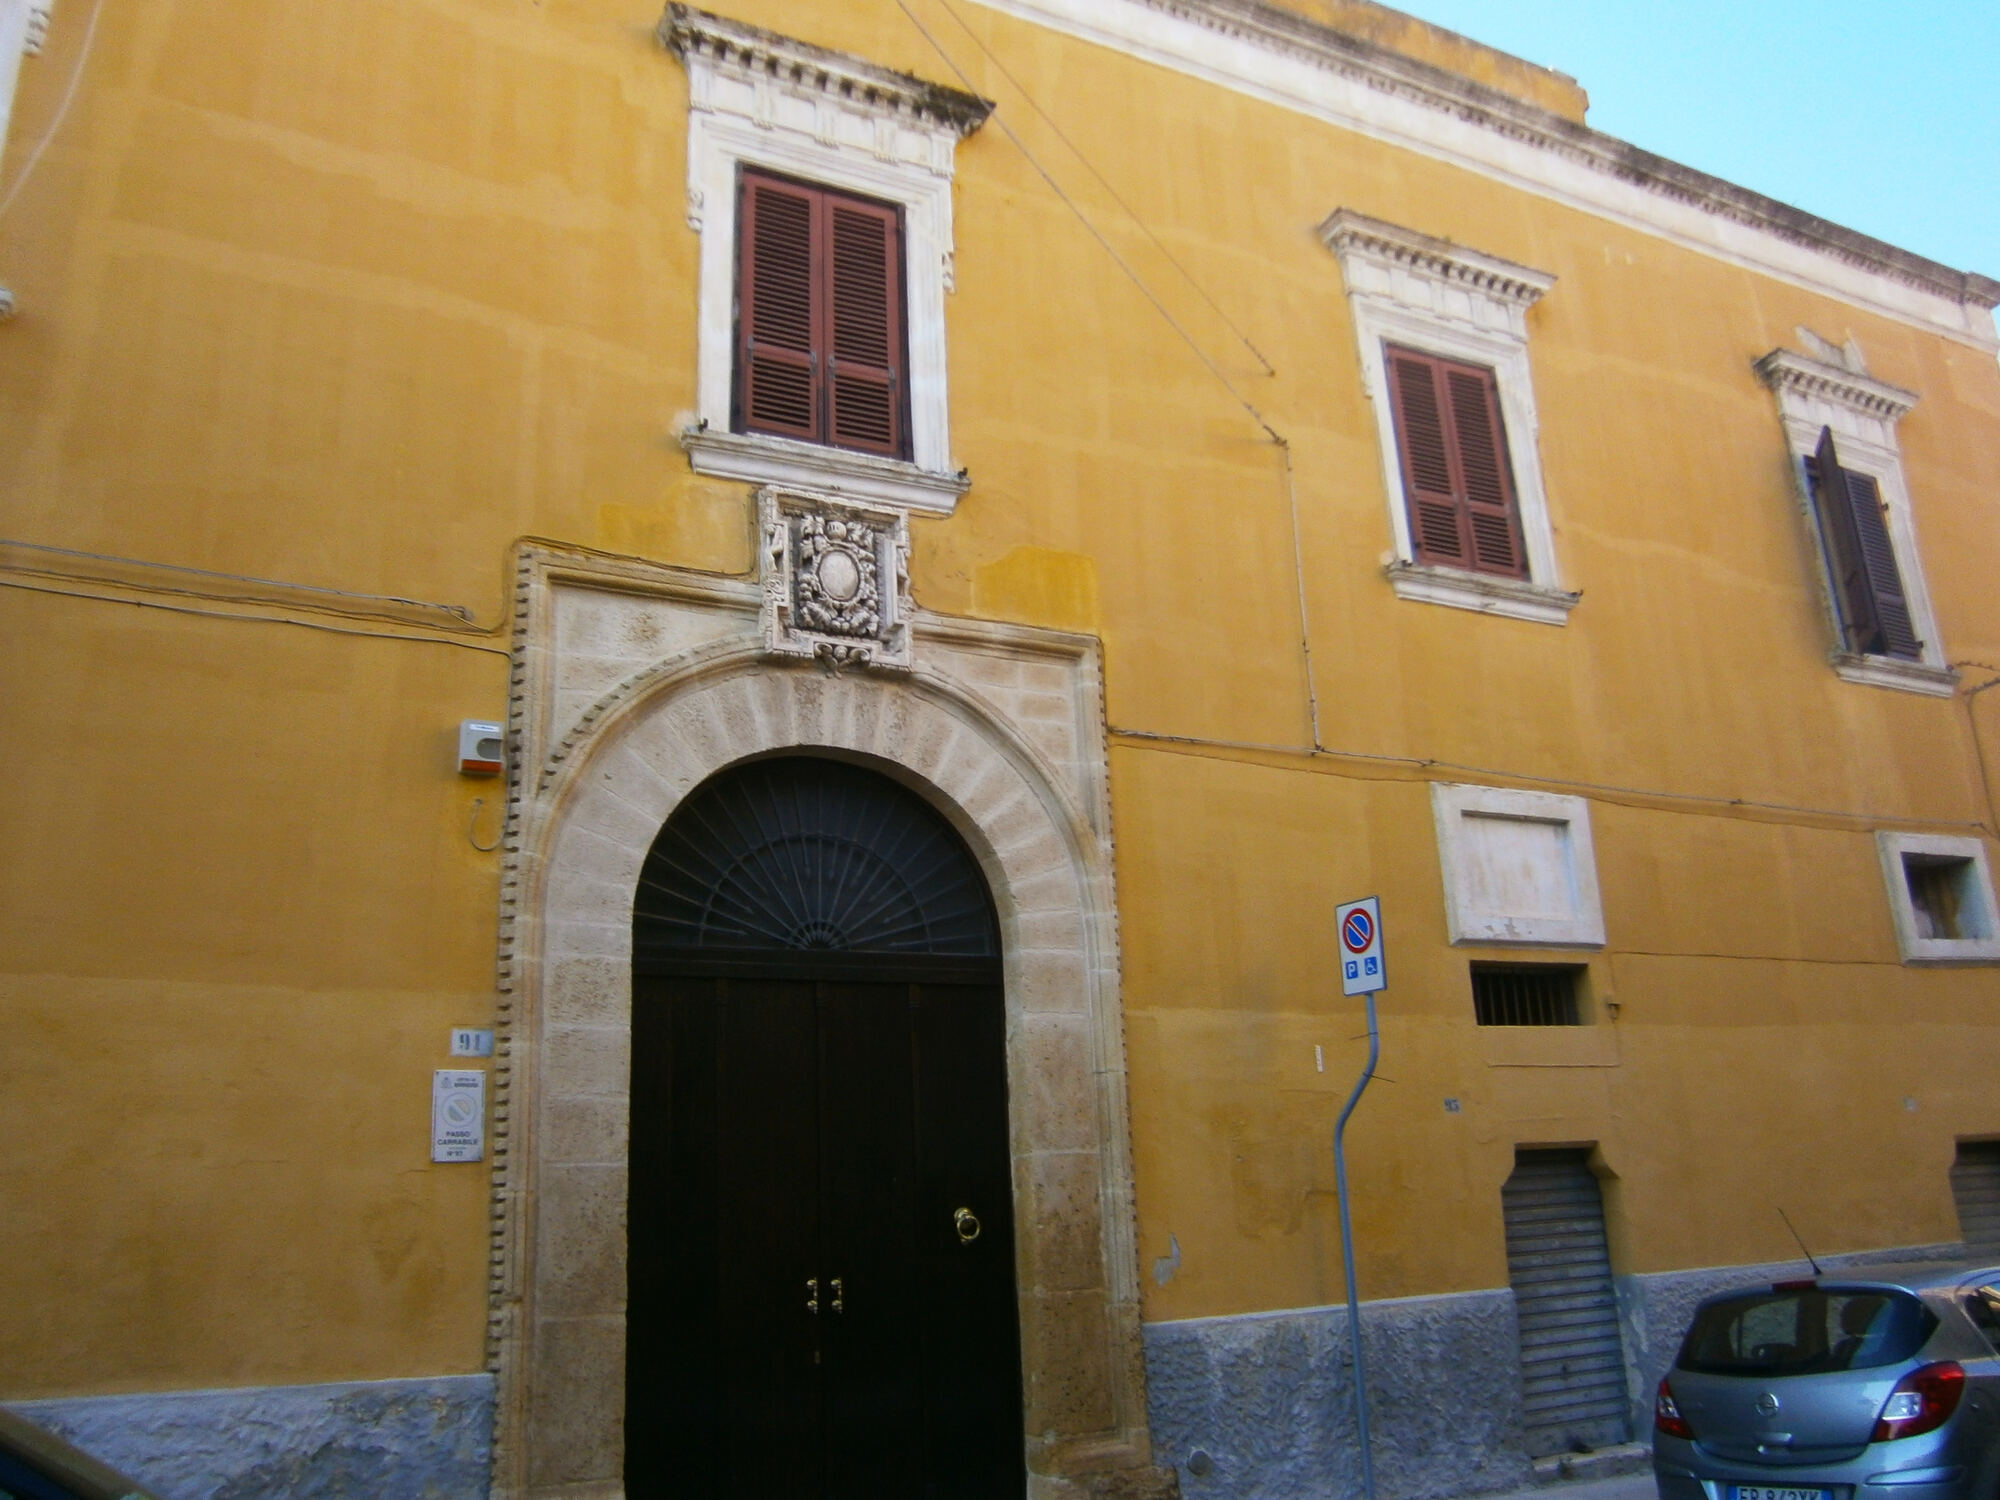 Palazzo Ripa di Brindisi, edificio cinquecentesco con portale elegante, finestre rettangolari e pitture del XVII e XVIII secolo.